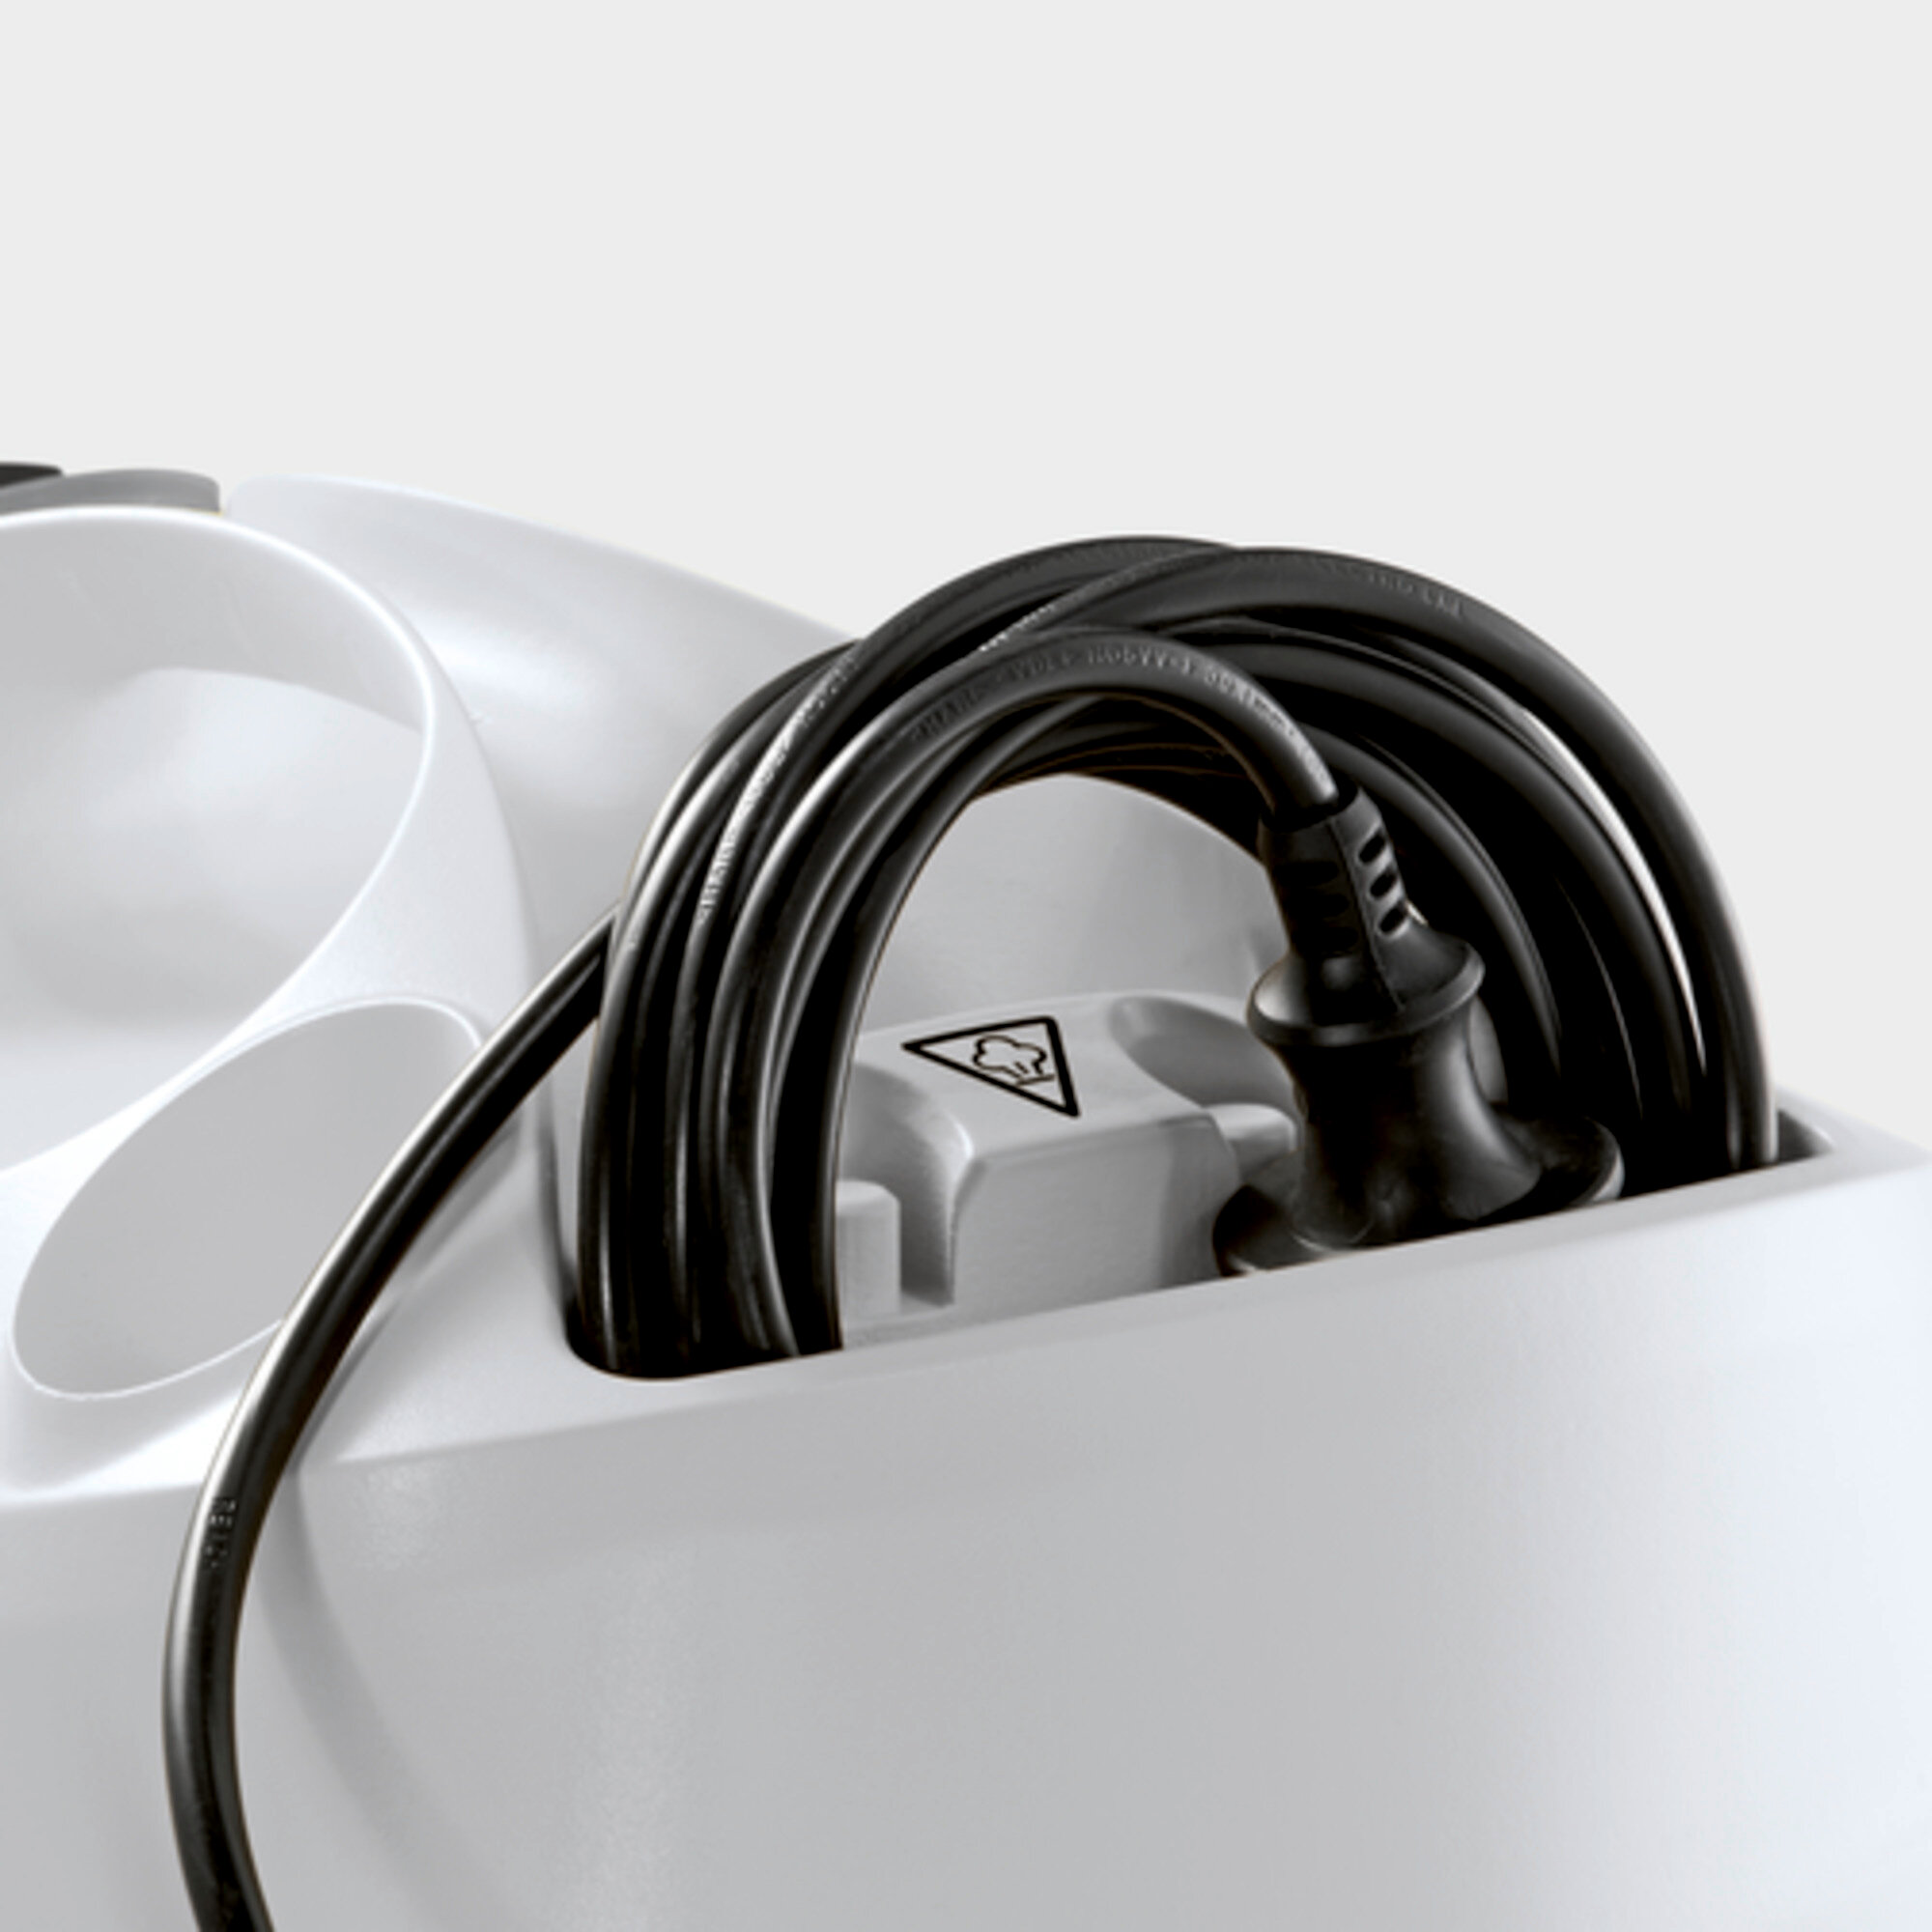 Пароочиститель SC 4 EasyFix Iron: Отсек для хранения кабеля